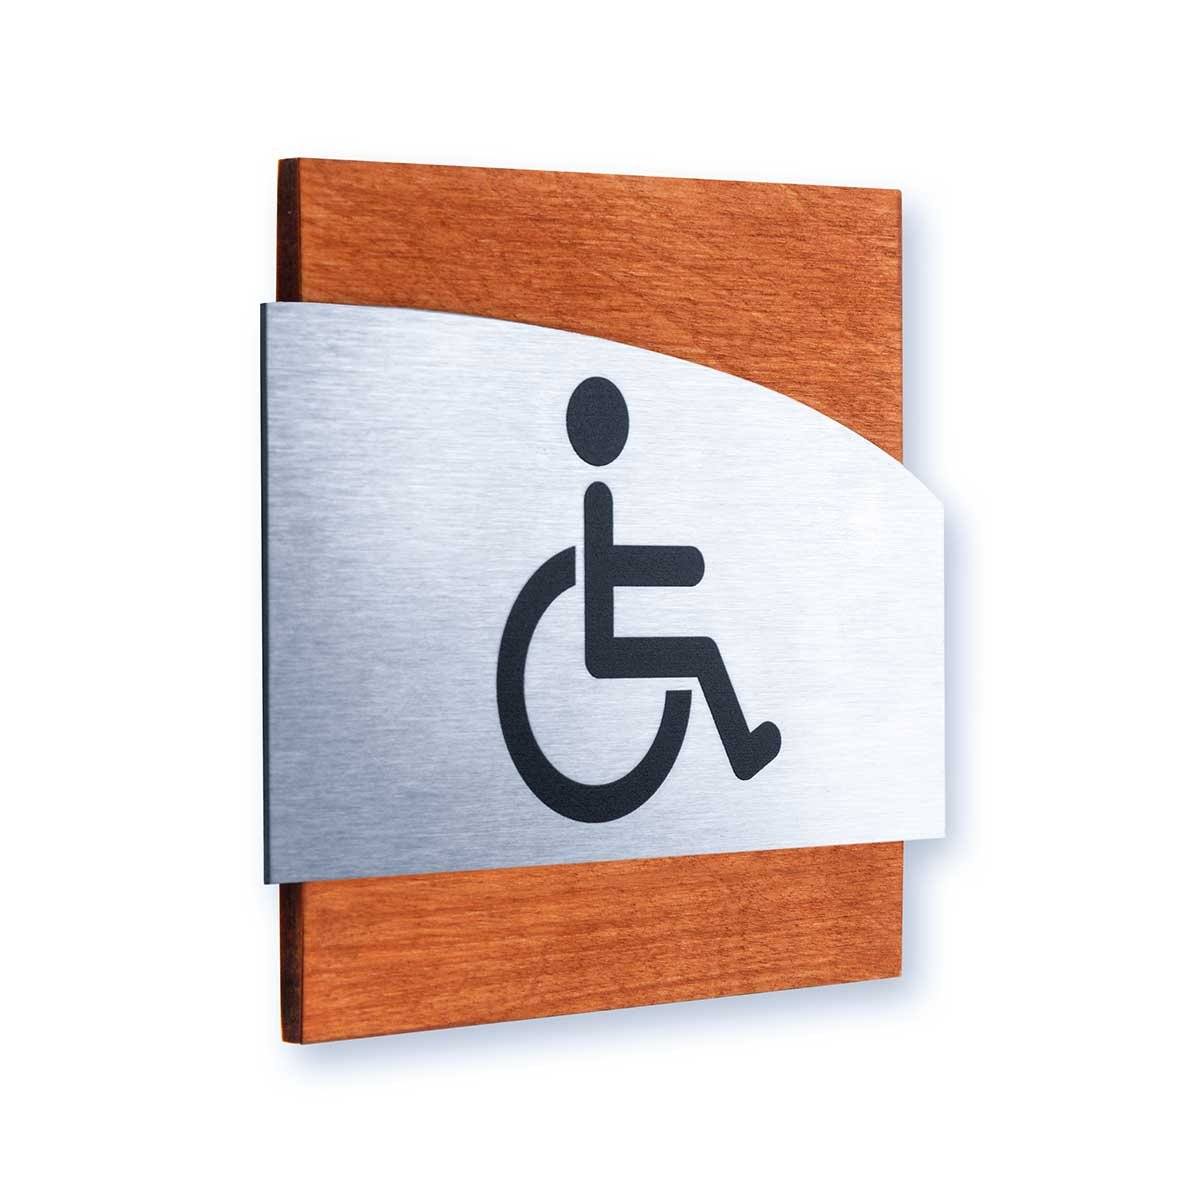 Steel Wheelchairs Wign for Restroom Doors Bathroom Signs Walhunt Bsign